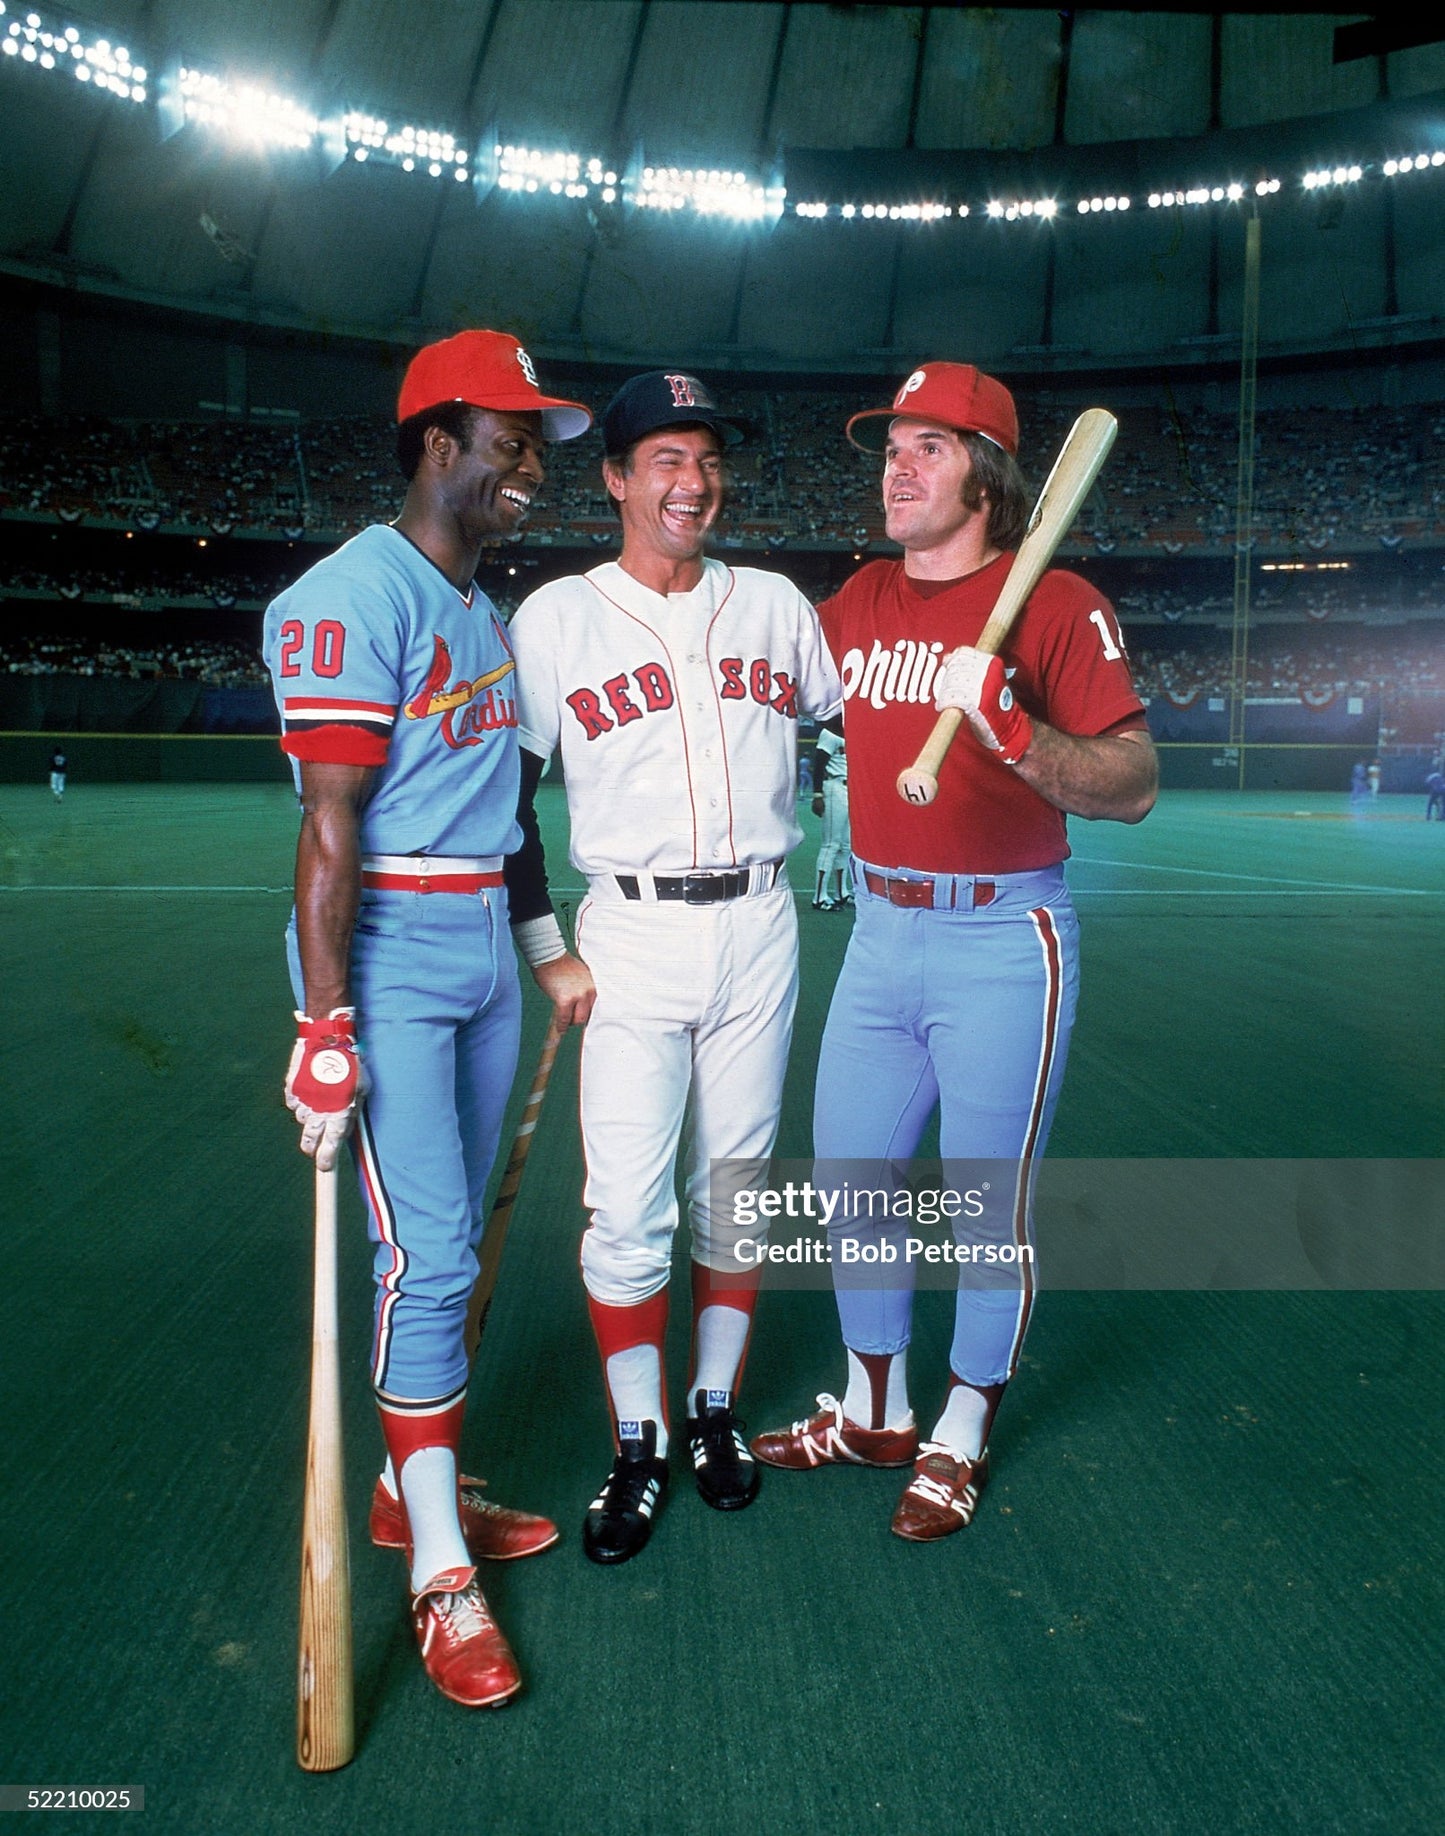 St. Louis Cardinals Lou Brock 1979 MLB Baseball Jersey (42/Medium)